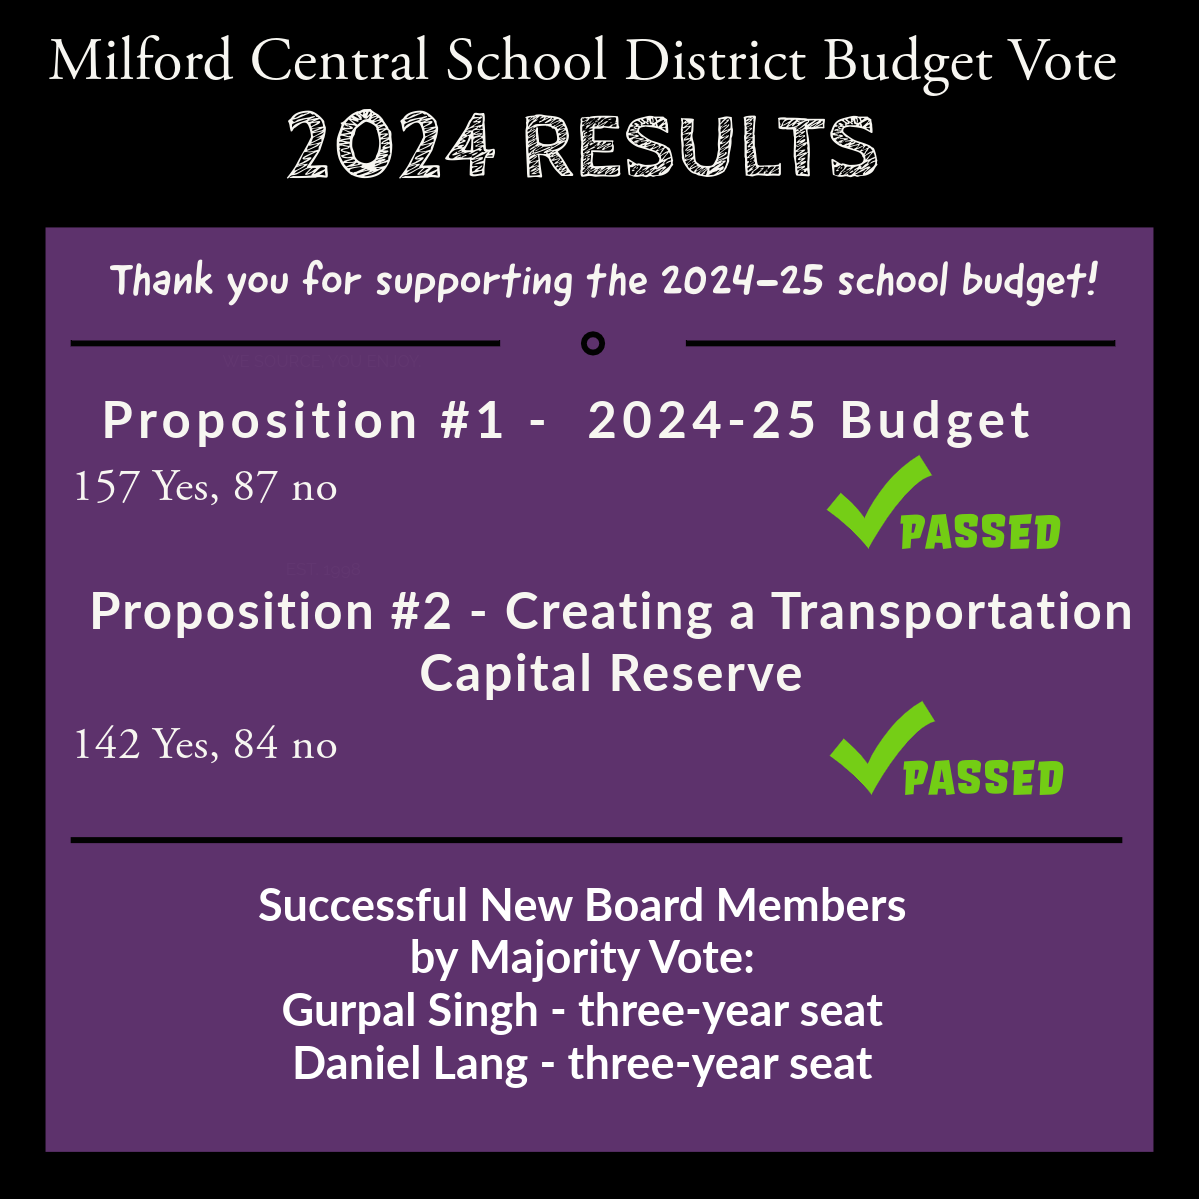 budget vote